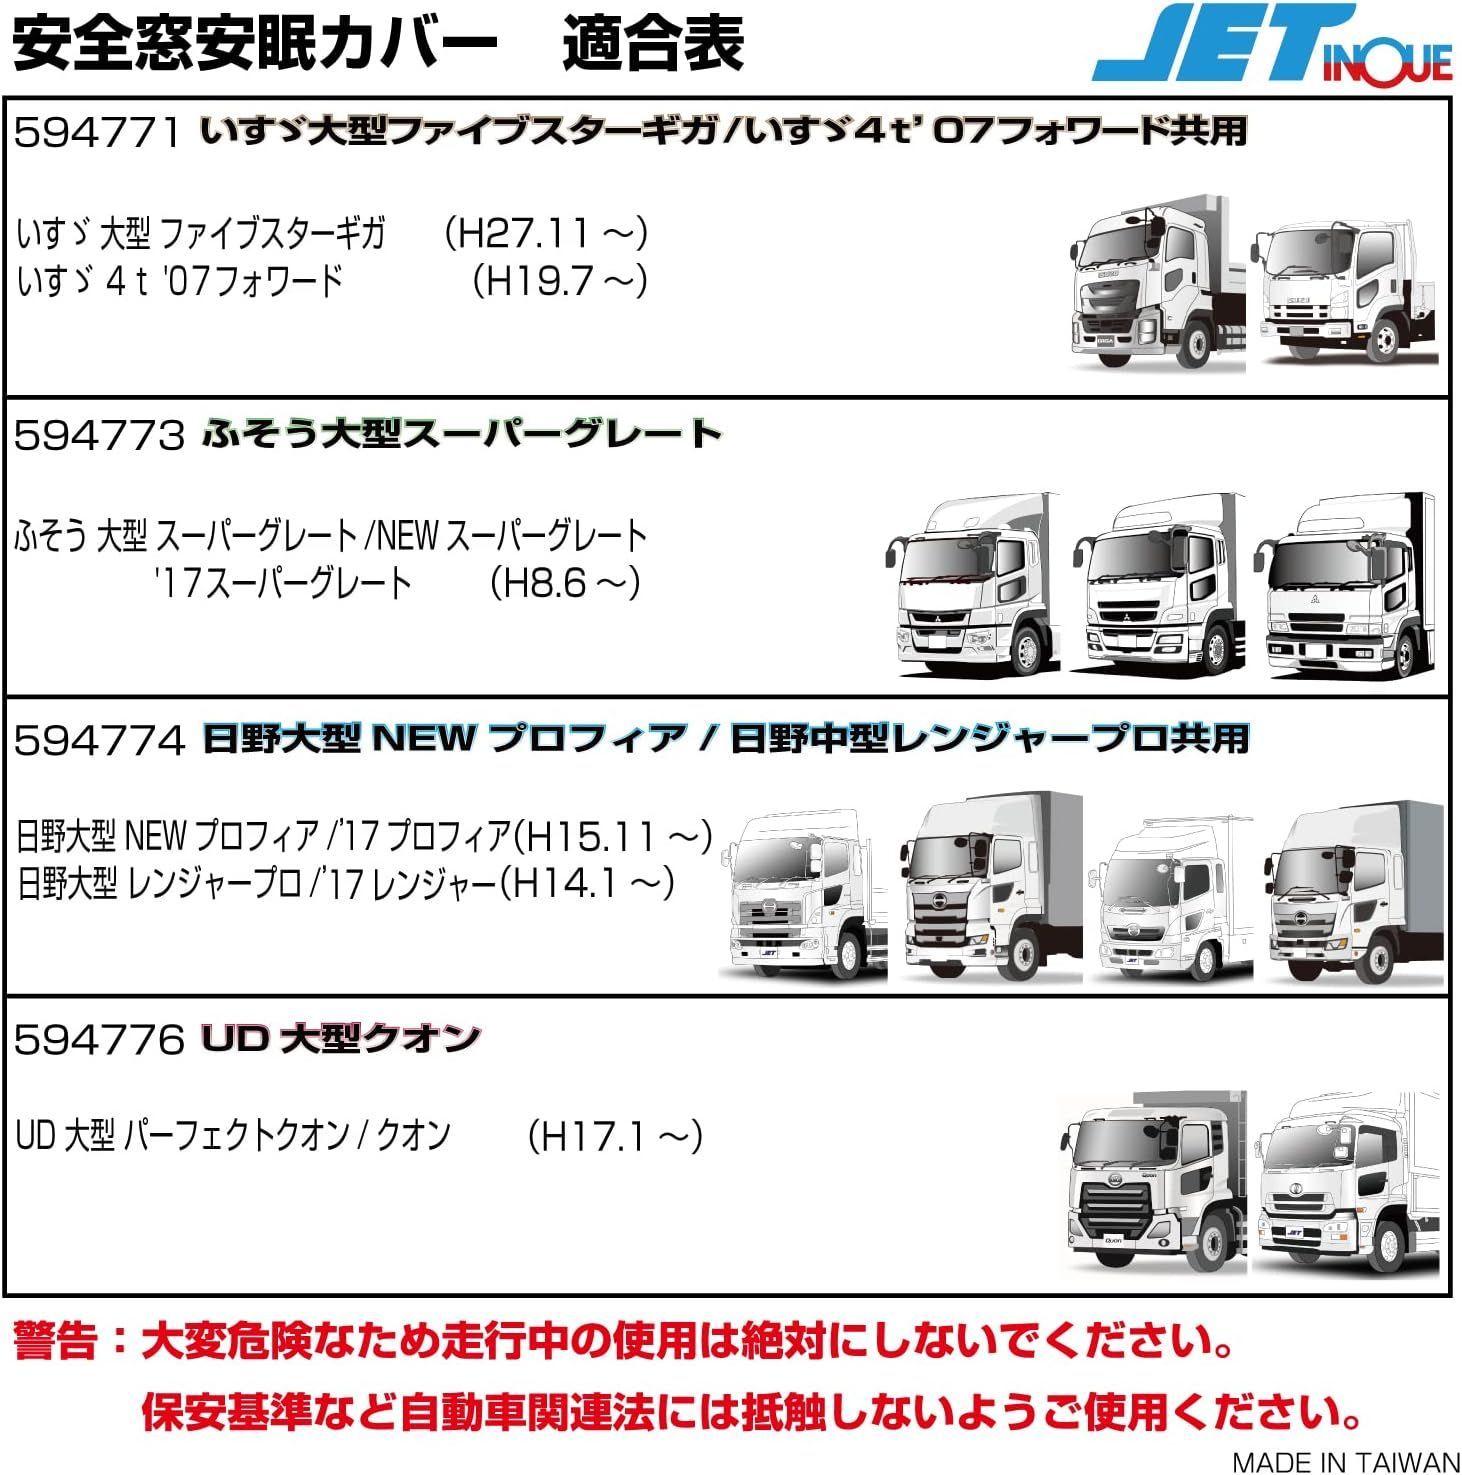 Jet INOUE (ジェットイノウエ) 安全窓安眠カバー スーパーグレート ブラック 594773